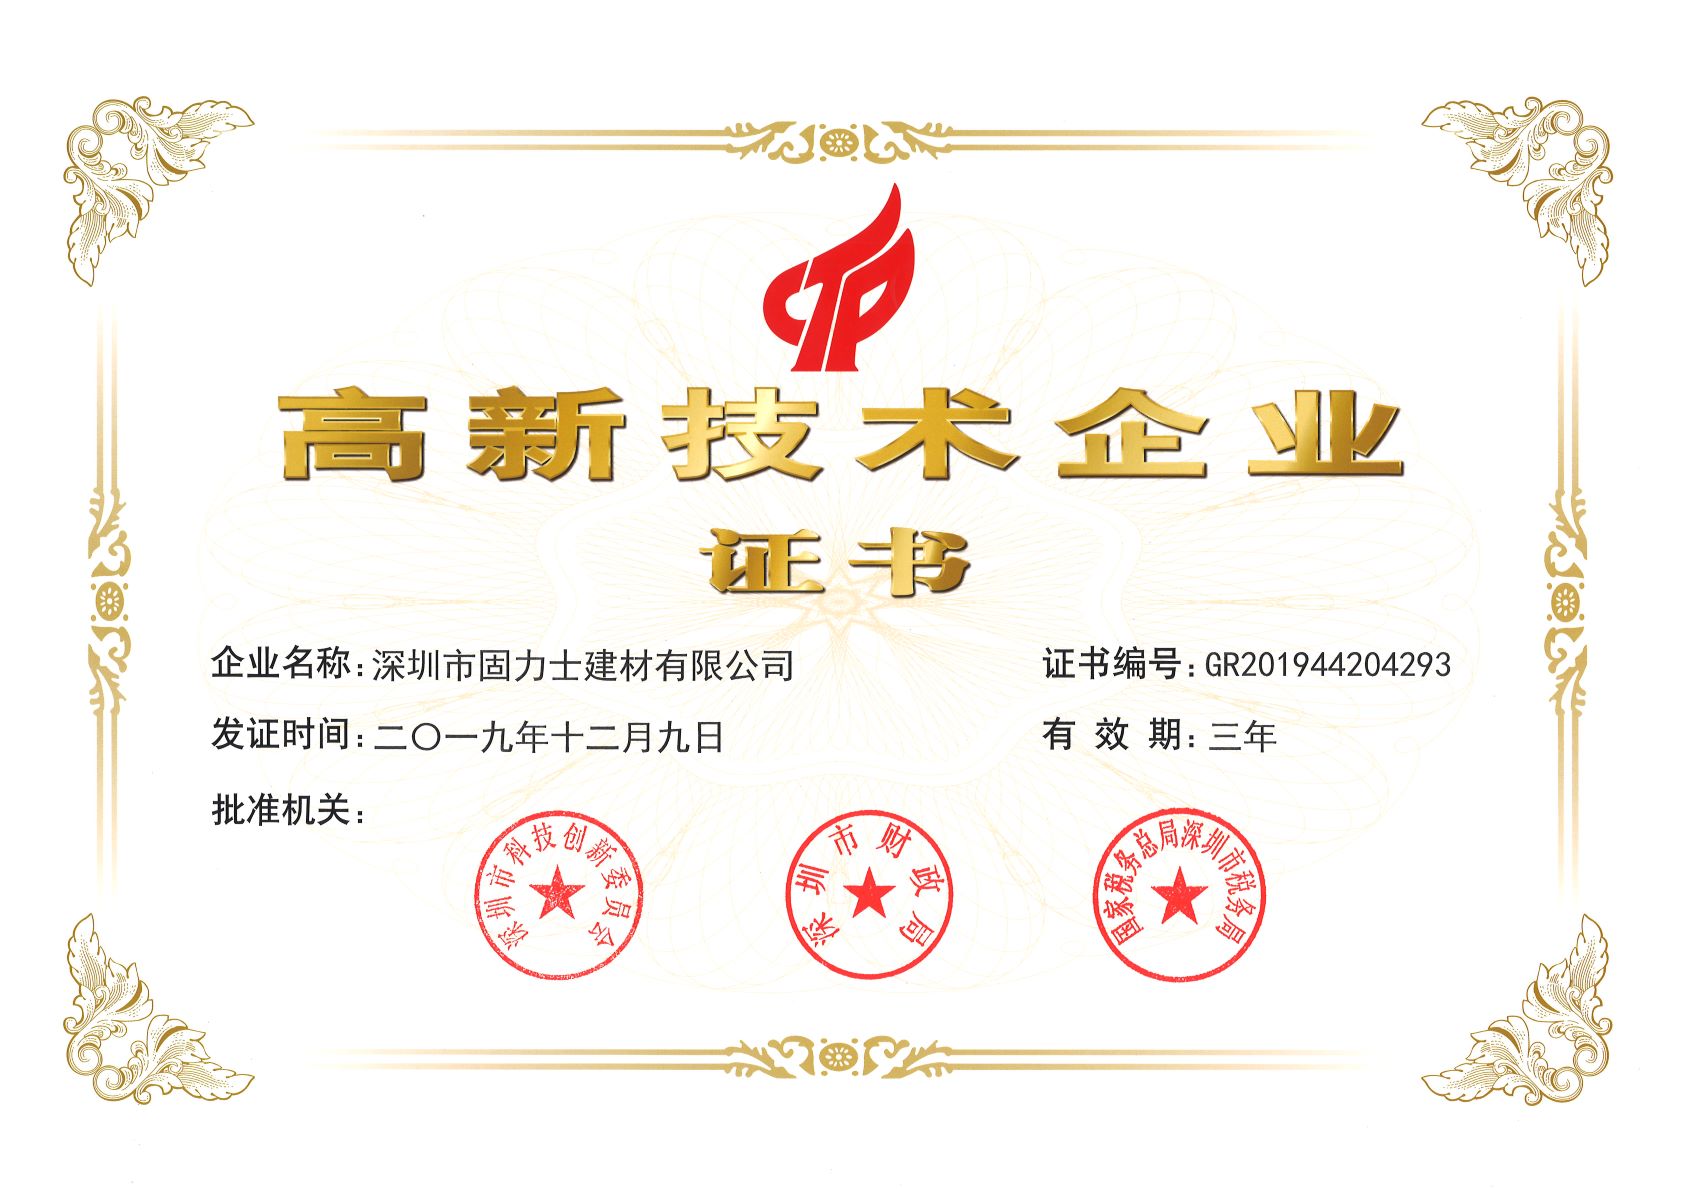 北京热烈祝贺深圳市固力士建材有限公司通过高新技术企业认证